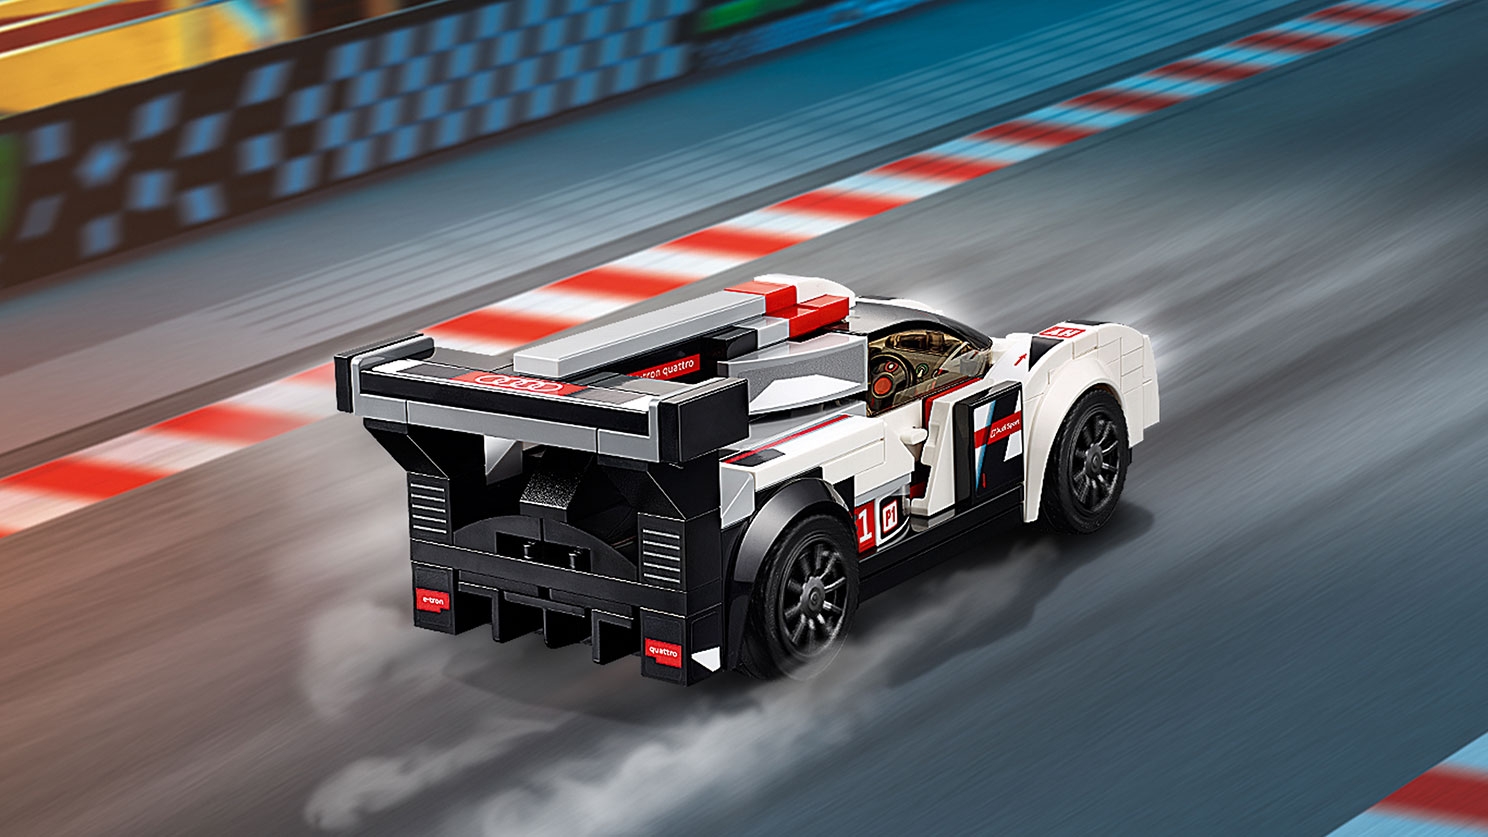 Audi R18 e-tron quattro - Videos - LEGO.com for kids